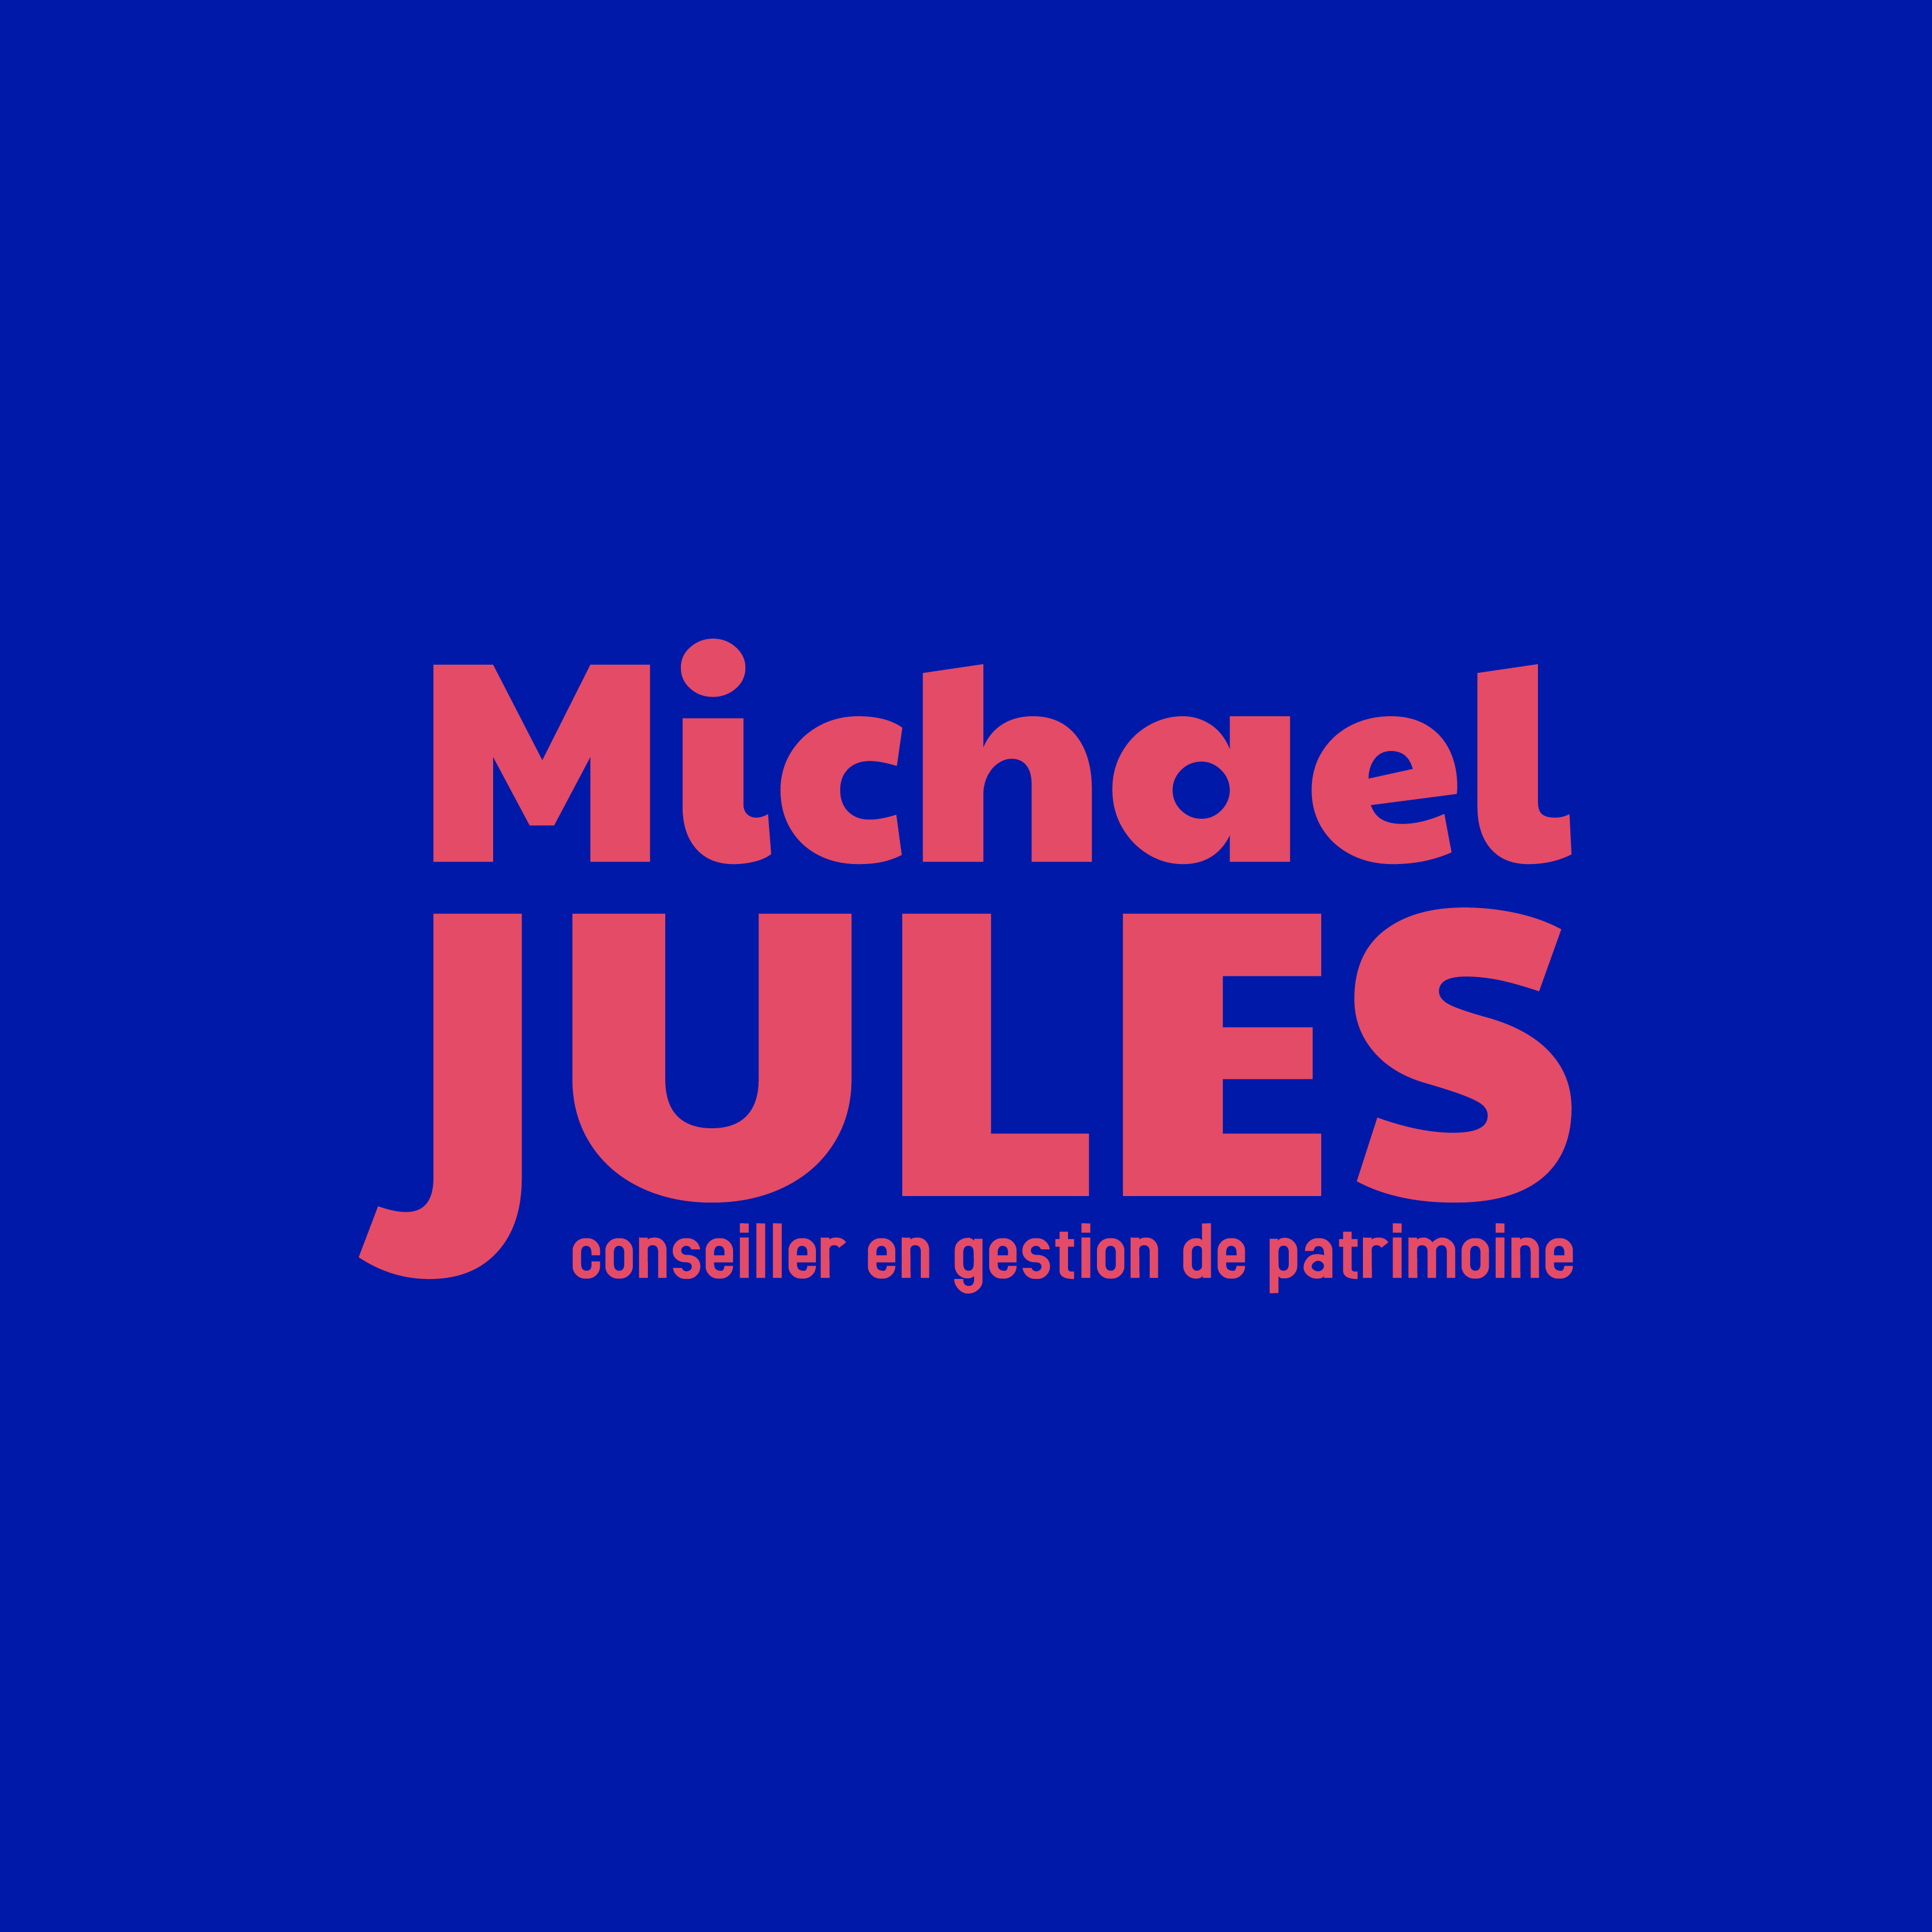 Michael JULES, inscrit à l'annuaire deeptinvest